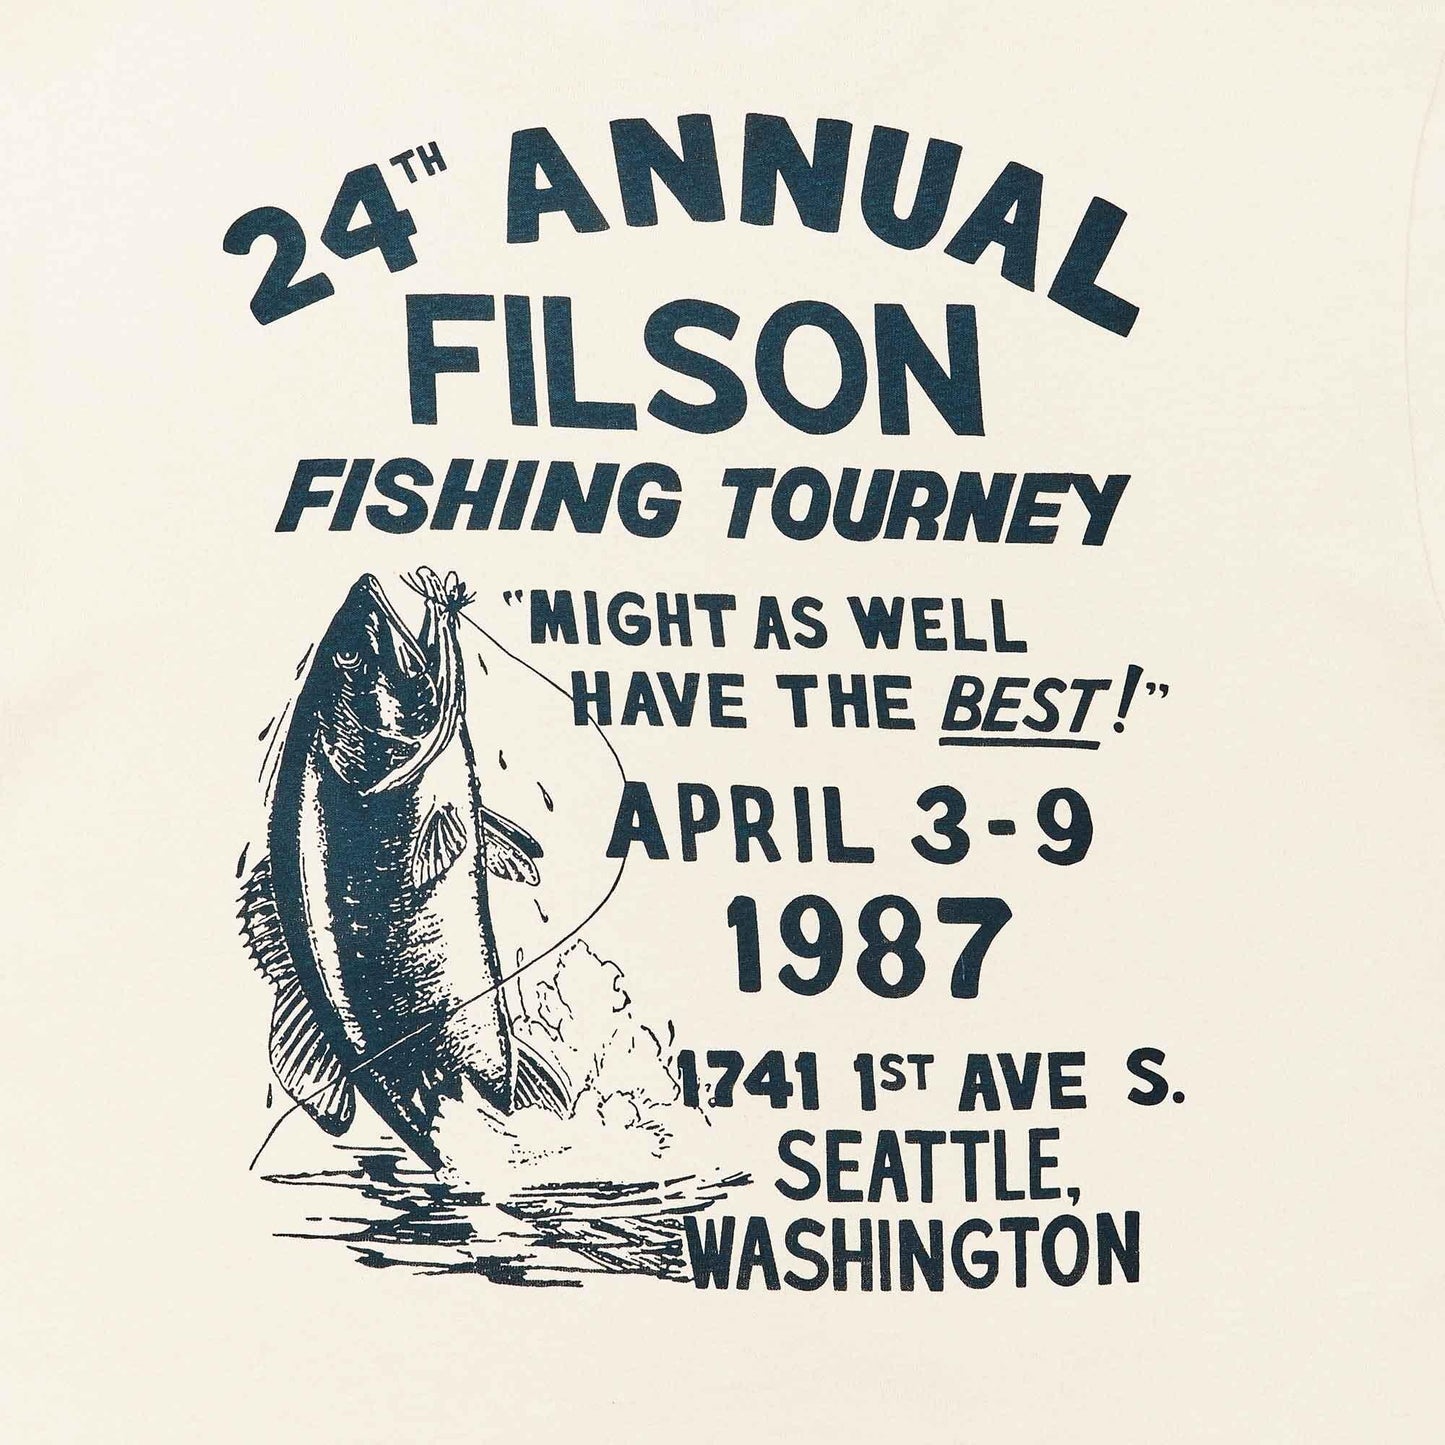 T-shirt a maniche corte Filson Pioneer Graphic in cotone beige (Stone Fishing)